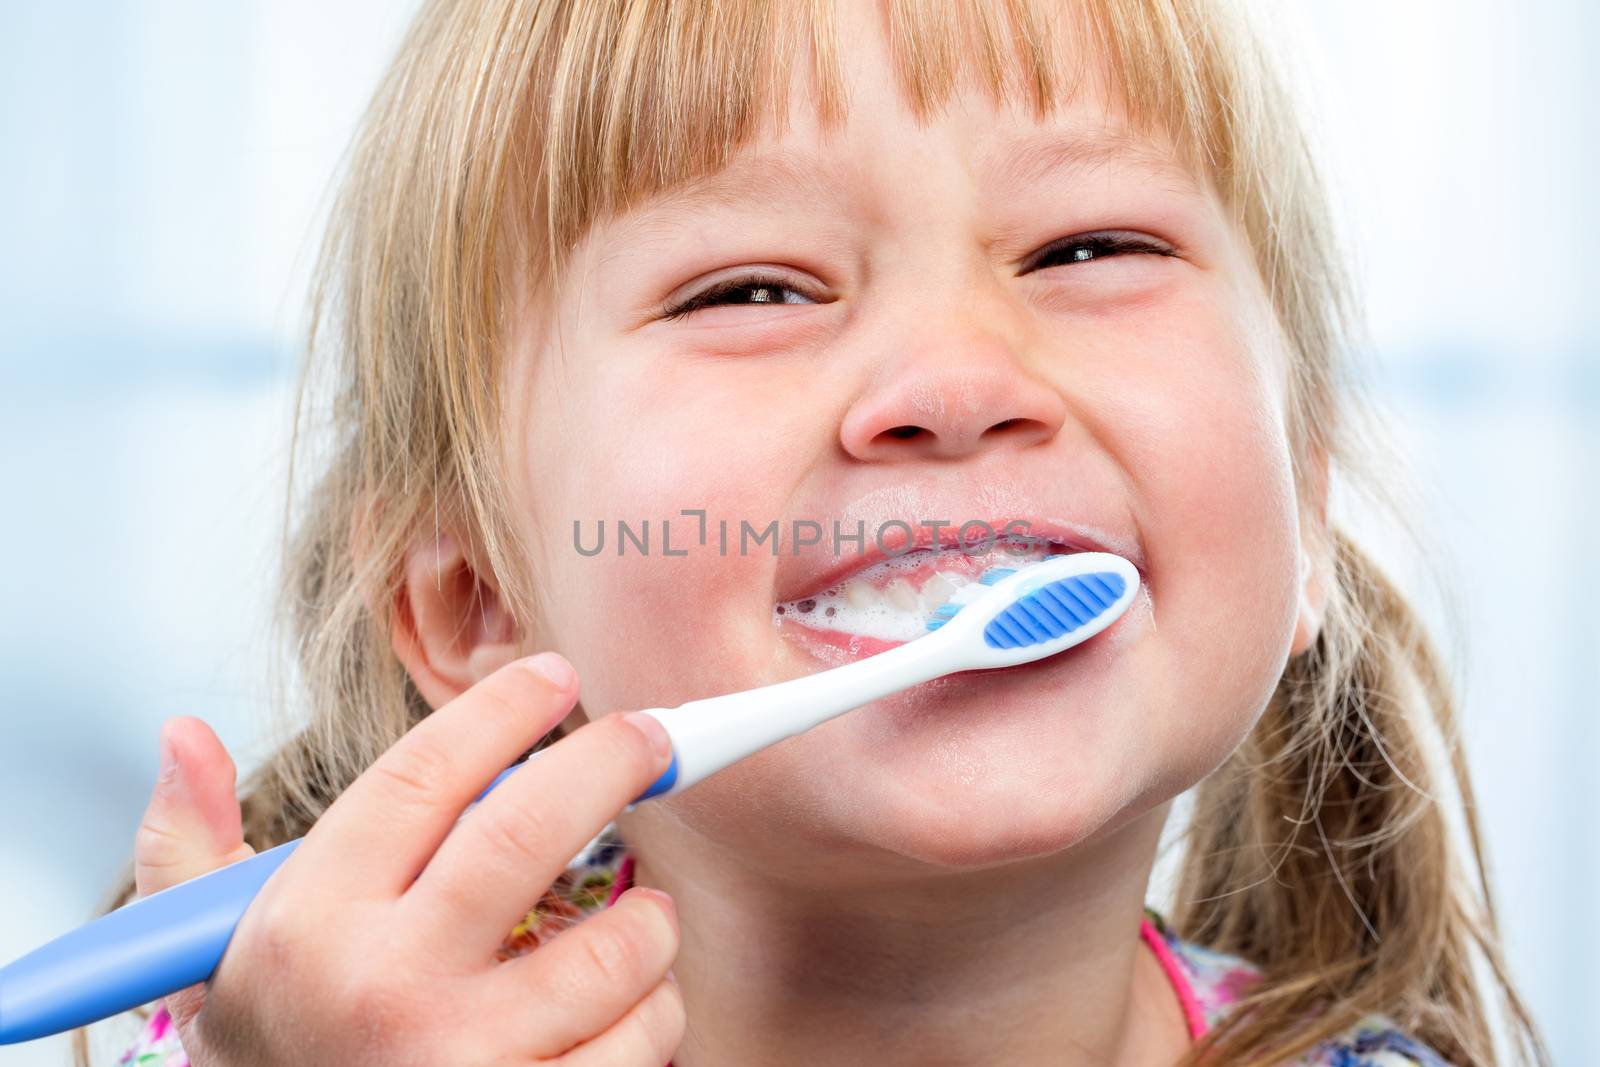 Youngster having fun brushing teeth. by karelnoppe